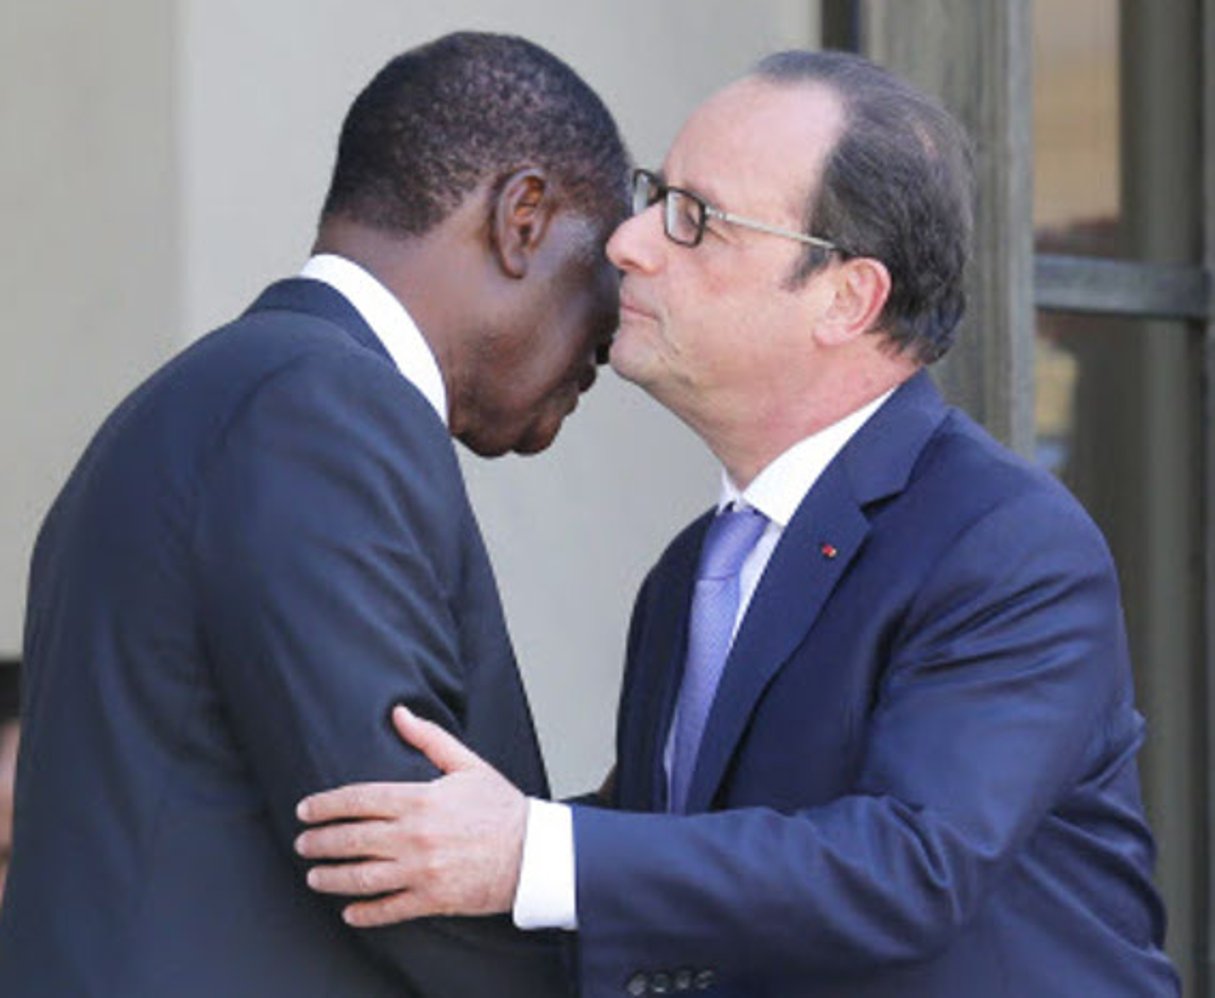 Le président français, François Hollande, et son homologue ivoirien, Alassane Ouattara, le 16 juin 2015 à Paris. © Jacques Brinon/AP/SIPA